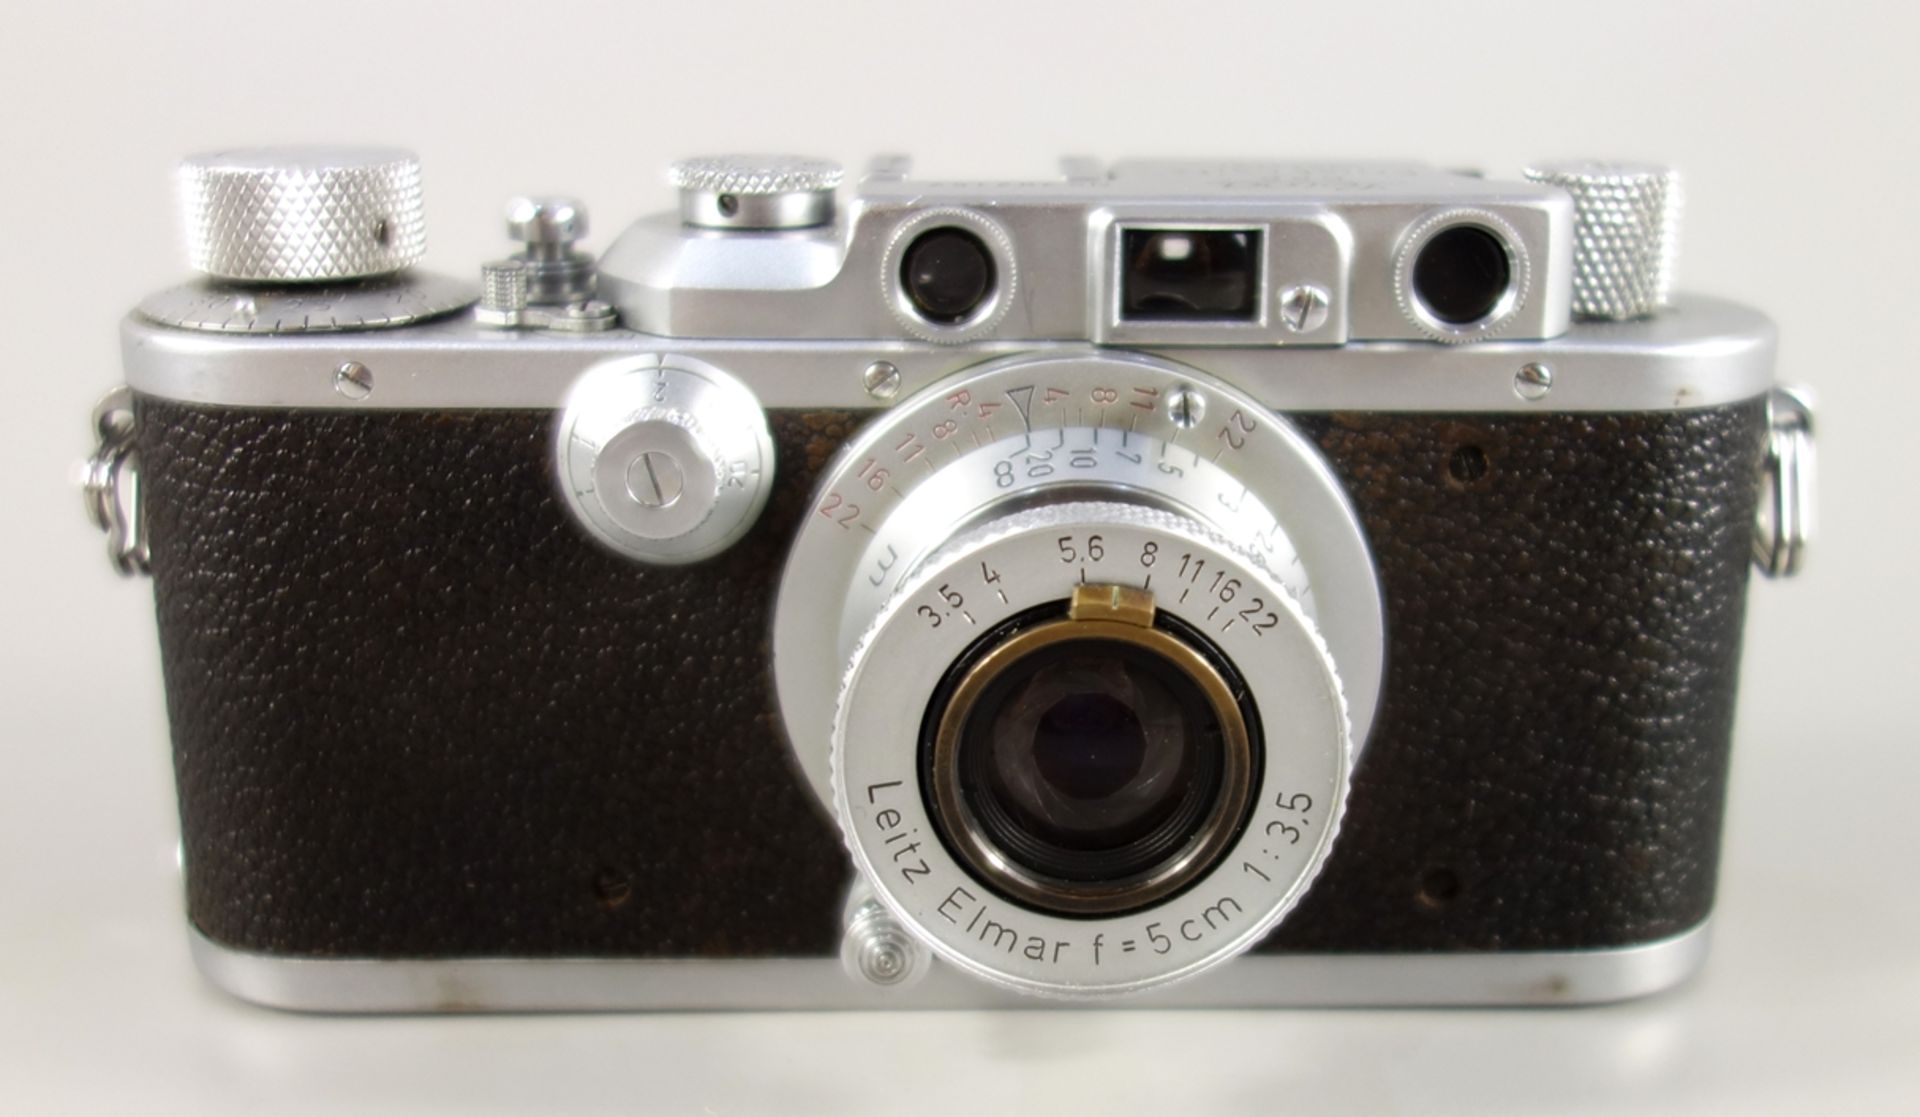 Leica IIIa, Sucherkamera, Ernst Leitz Wetzlar, 1938, Serien-Nr. 302157, sogenannte Schraubleica - Bild 2 aus 5